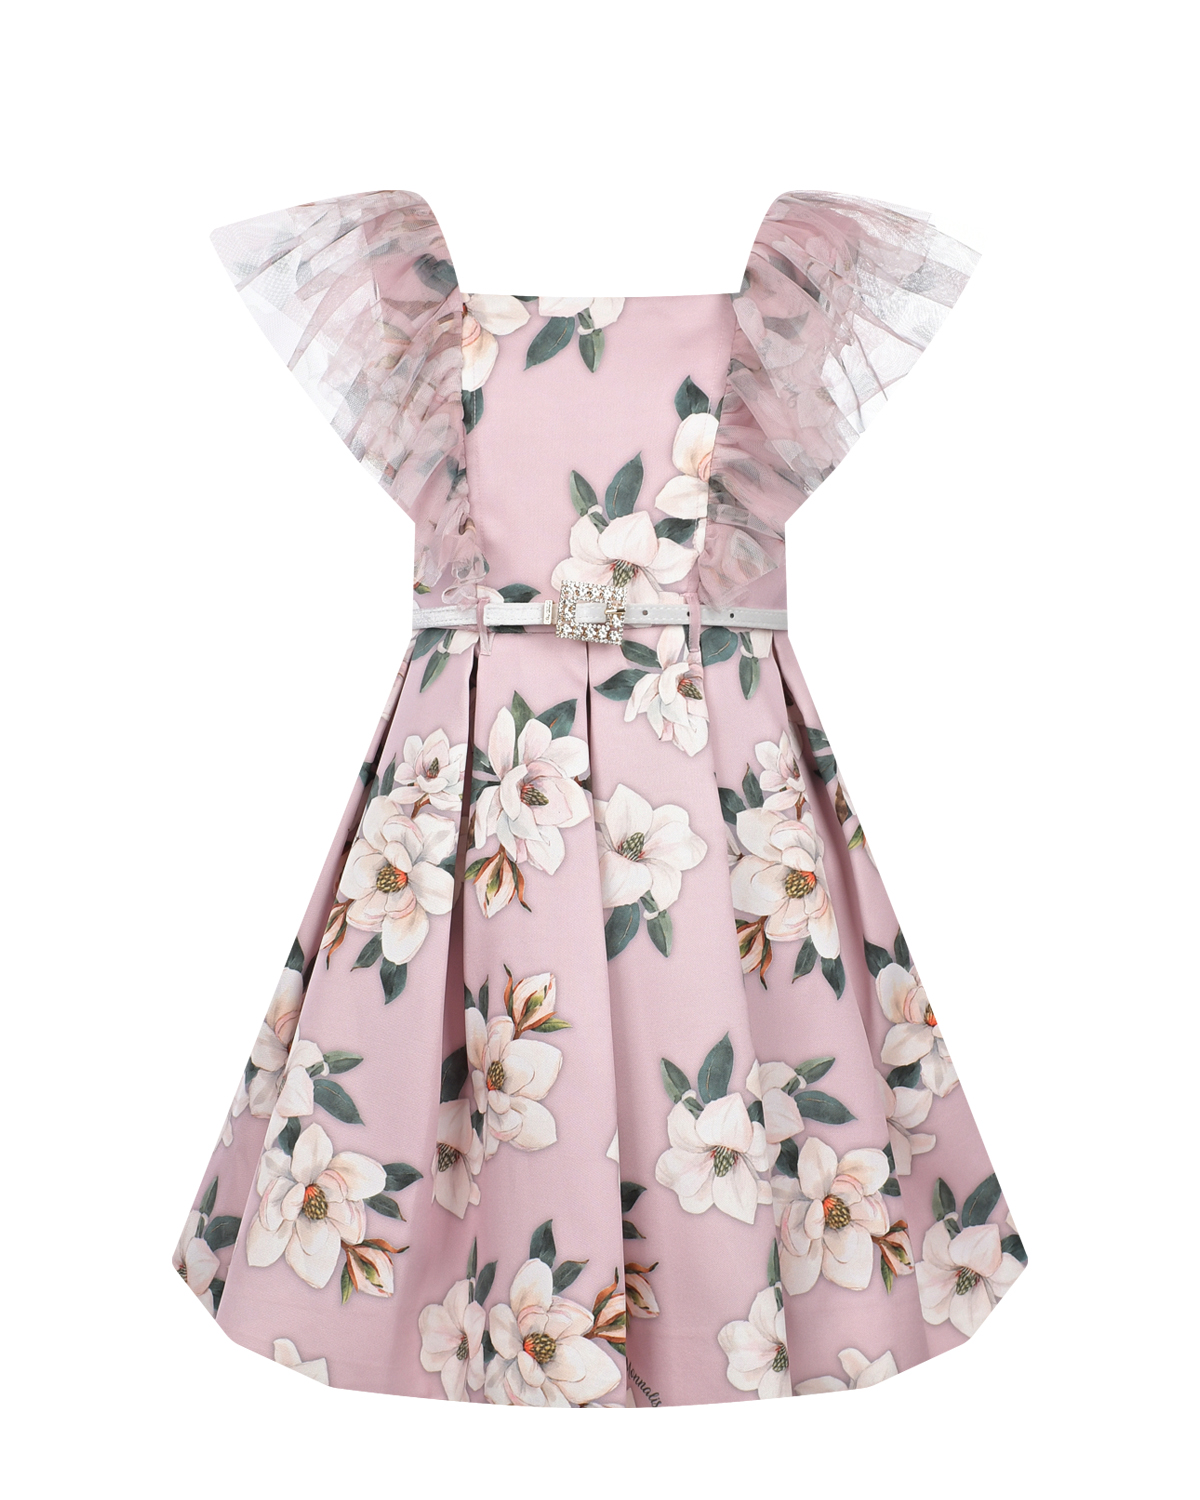 Розовое платье с цветочным принтом Monnalisa розовое многослойное платье gulliver 164